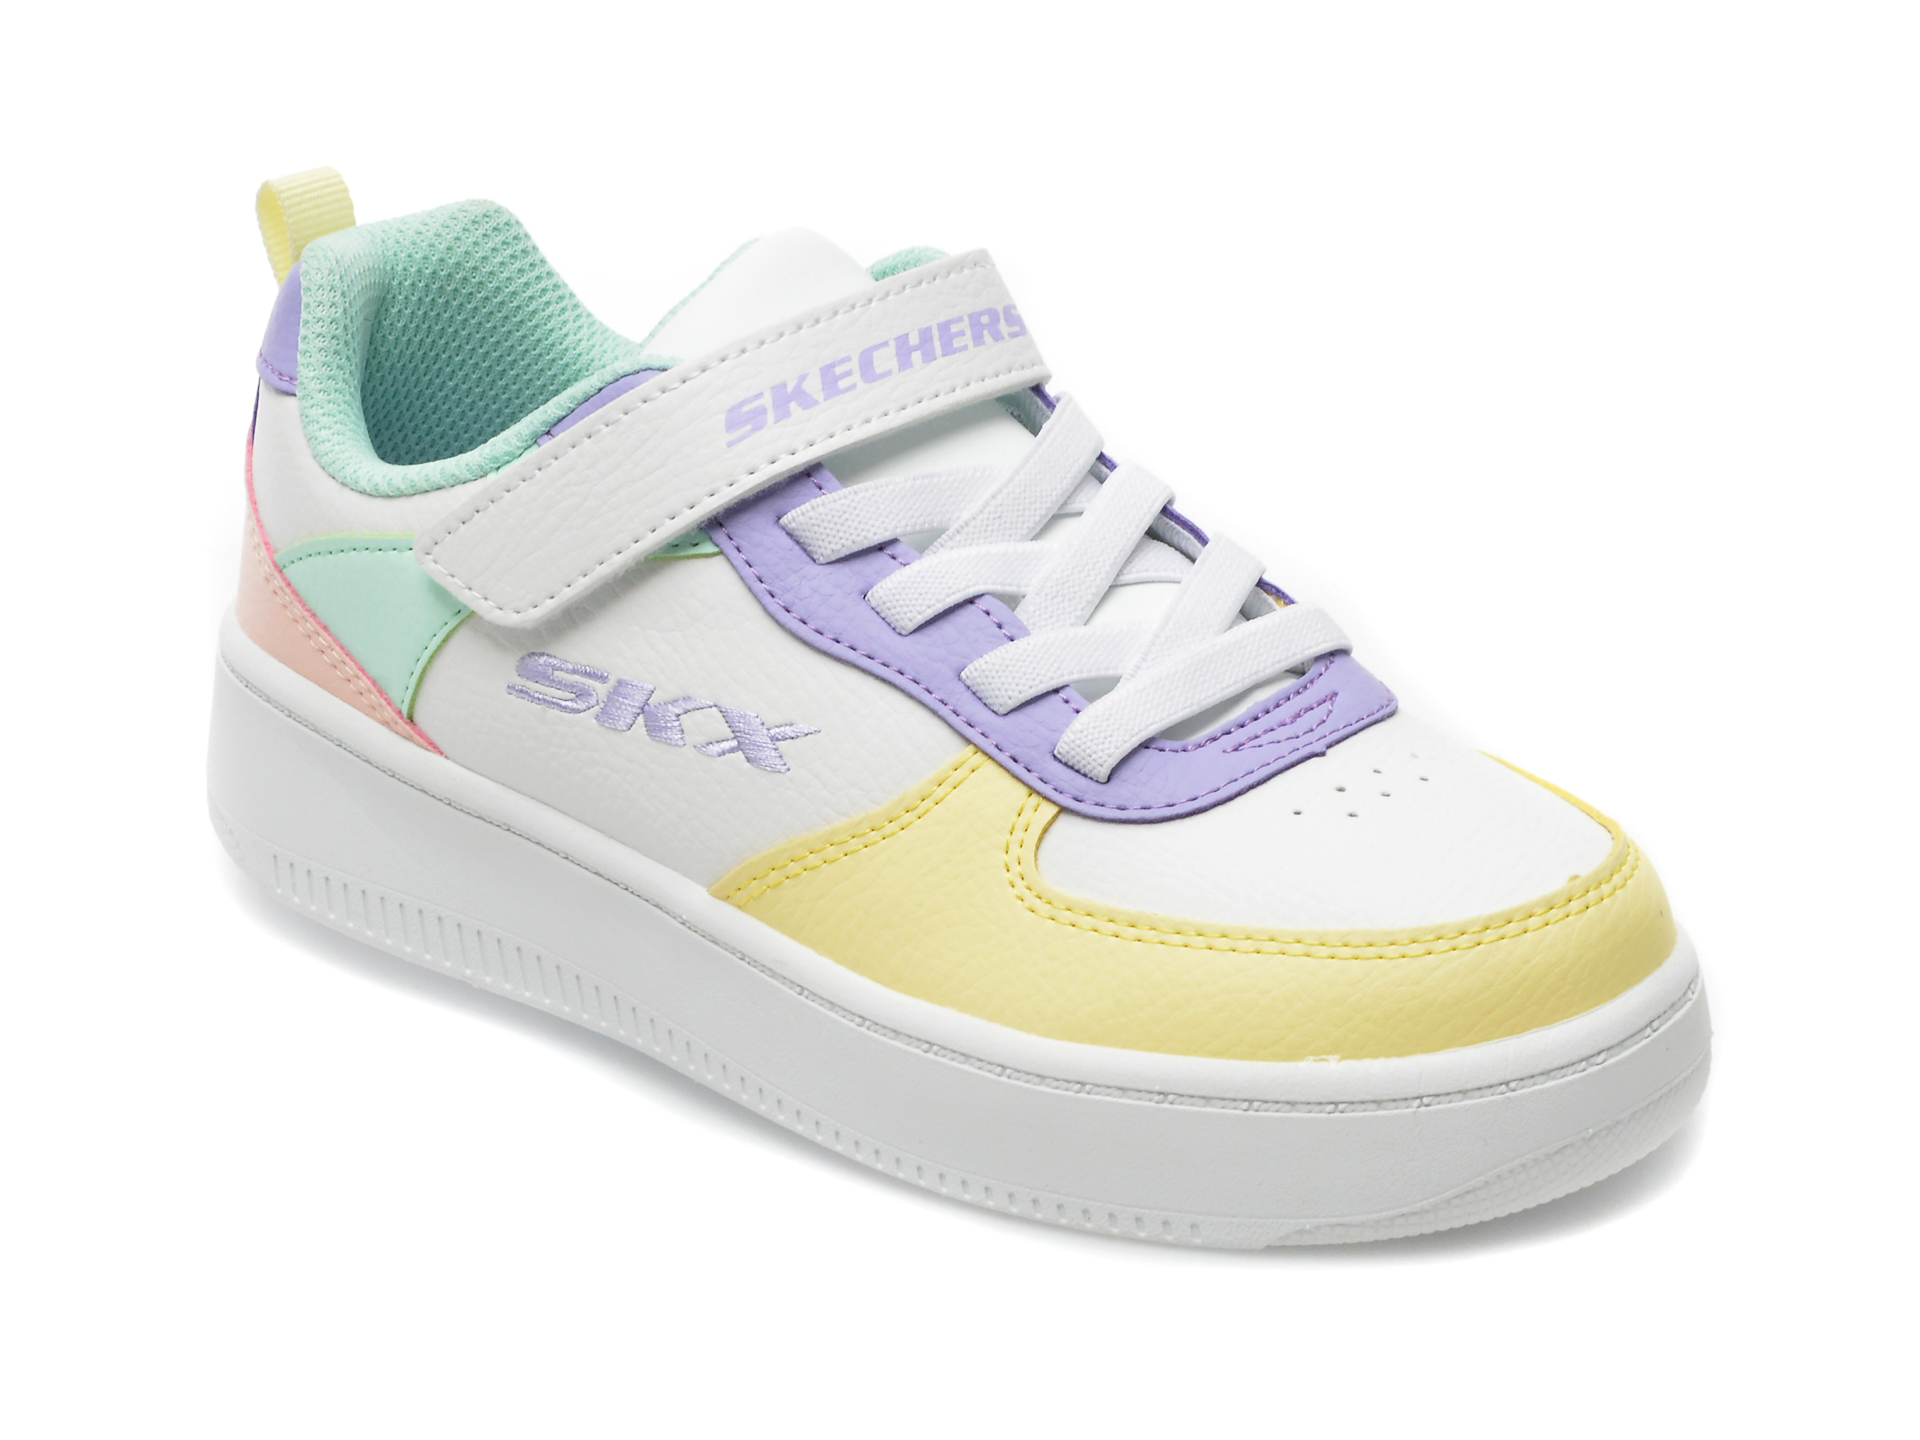 Pantofi sport SKECHERS albi, SPORT COURT, din piele ecologica /copii/incaltaminte